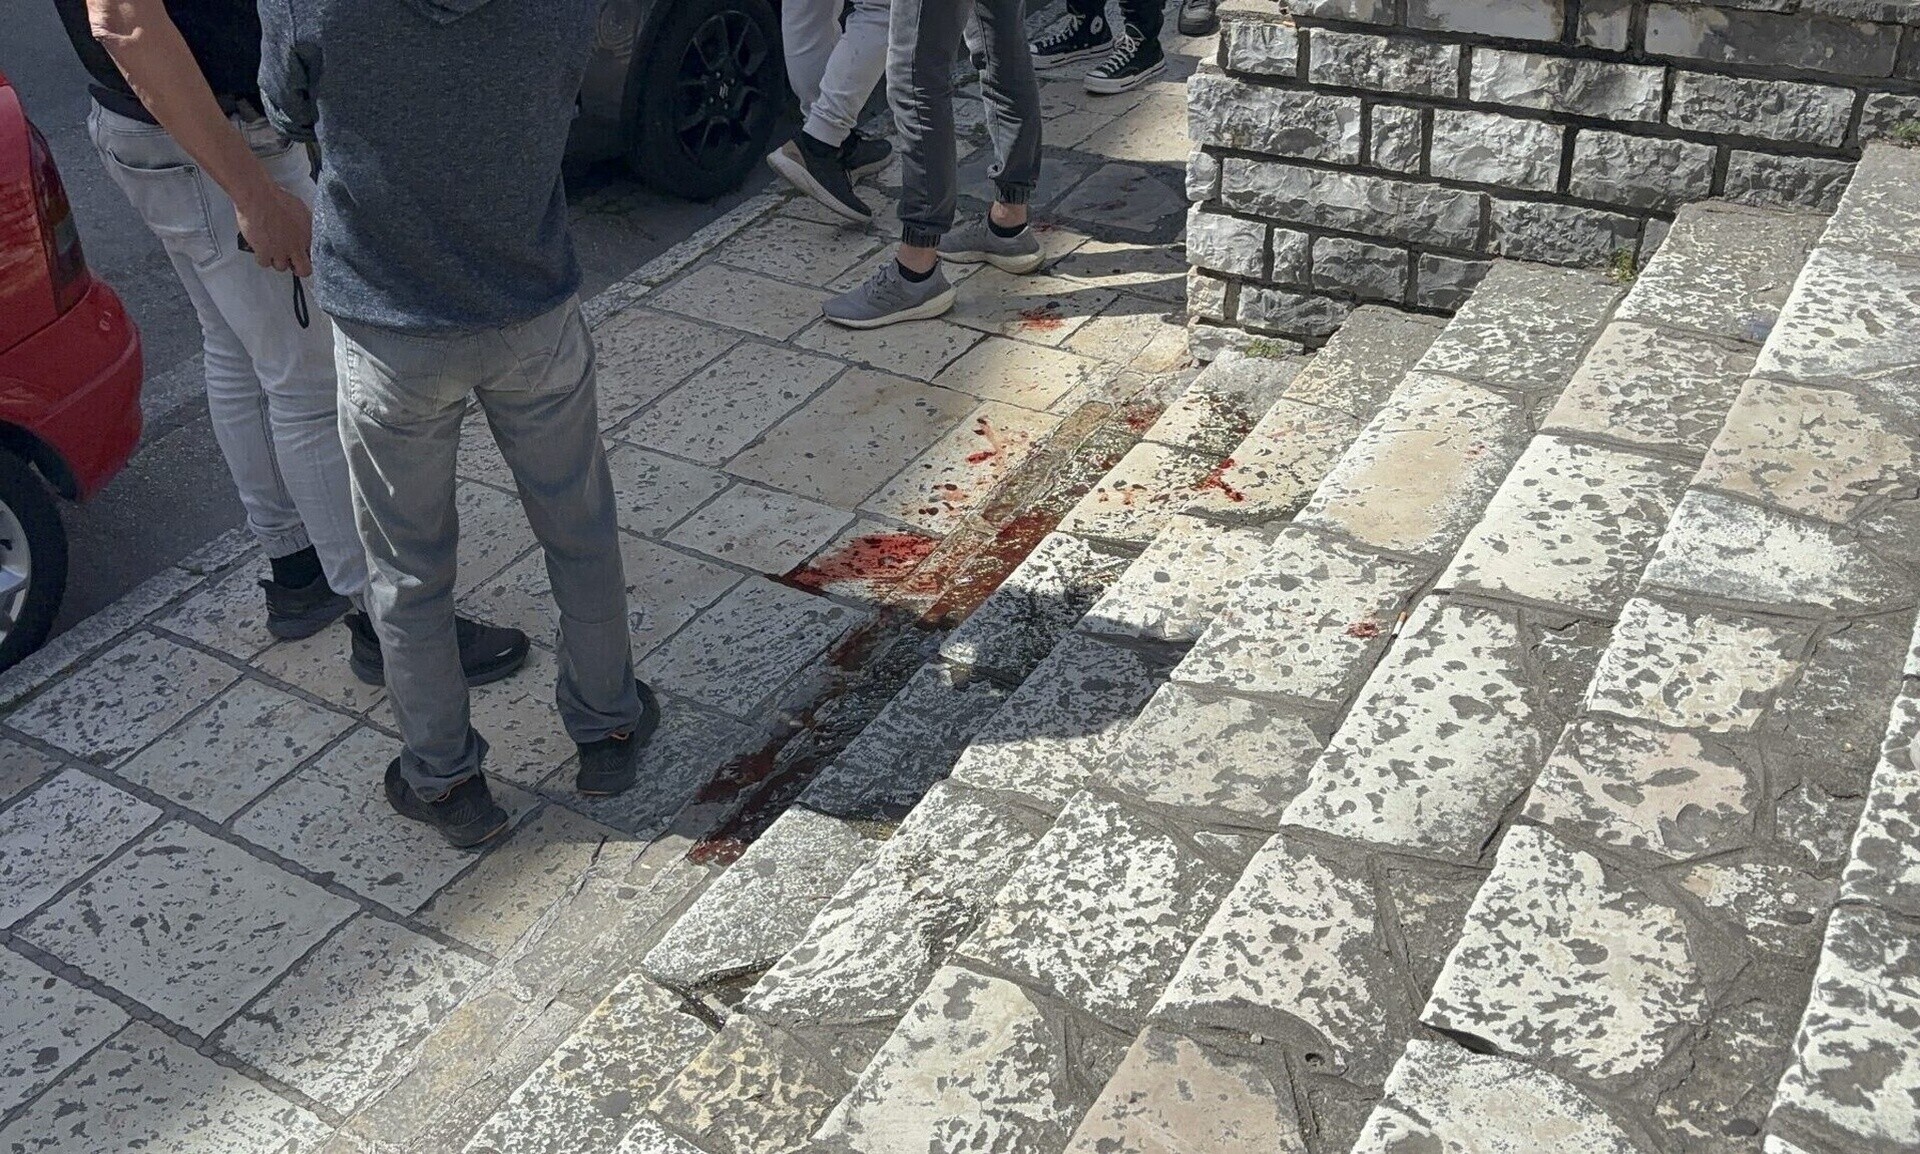 Εκτός ελέγχου η βία μεταξύ ανηλίκων – Σοκάρει το νέο περιστατικό στην Κέρκυρα